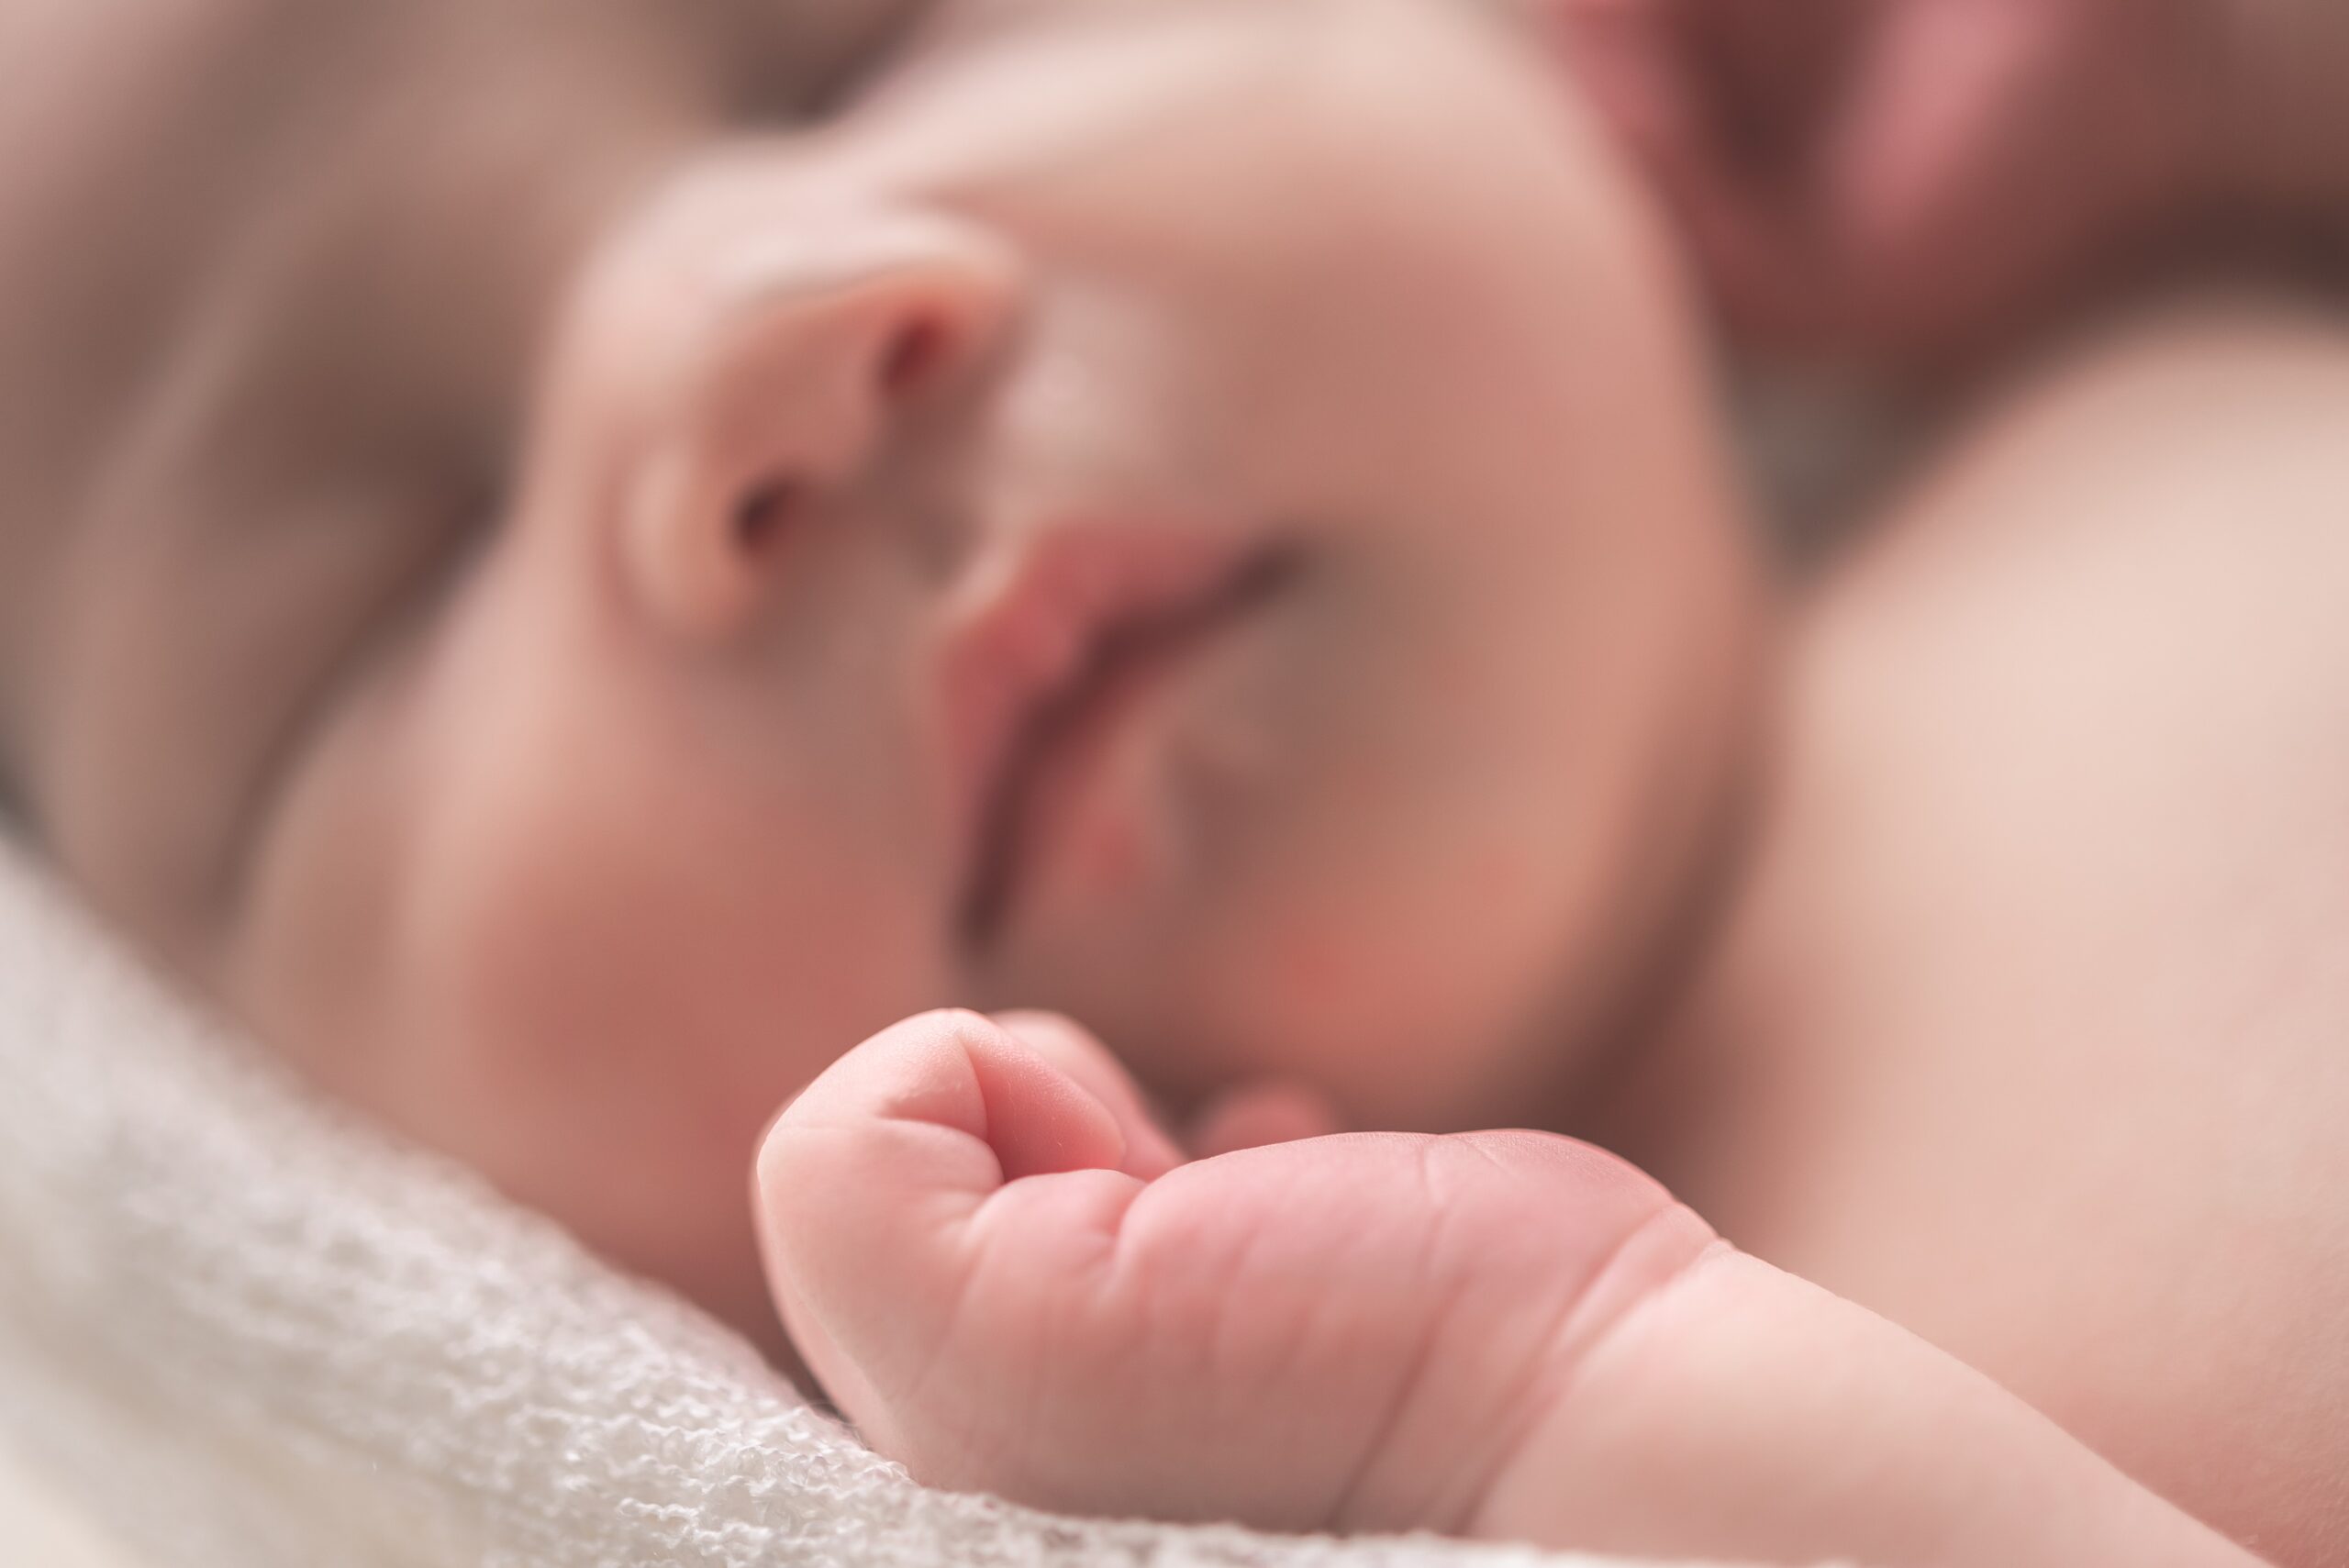 Visite al neonato, qualche piccola regola per il tuo e il suo bene